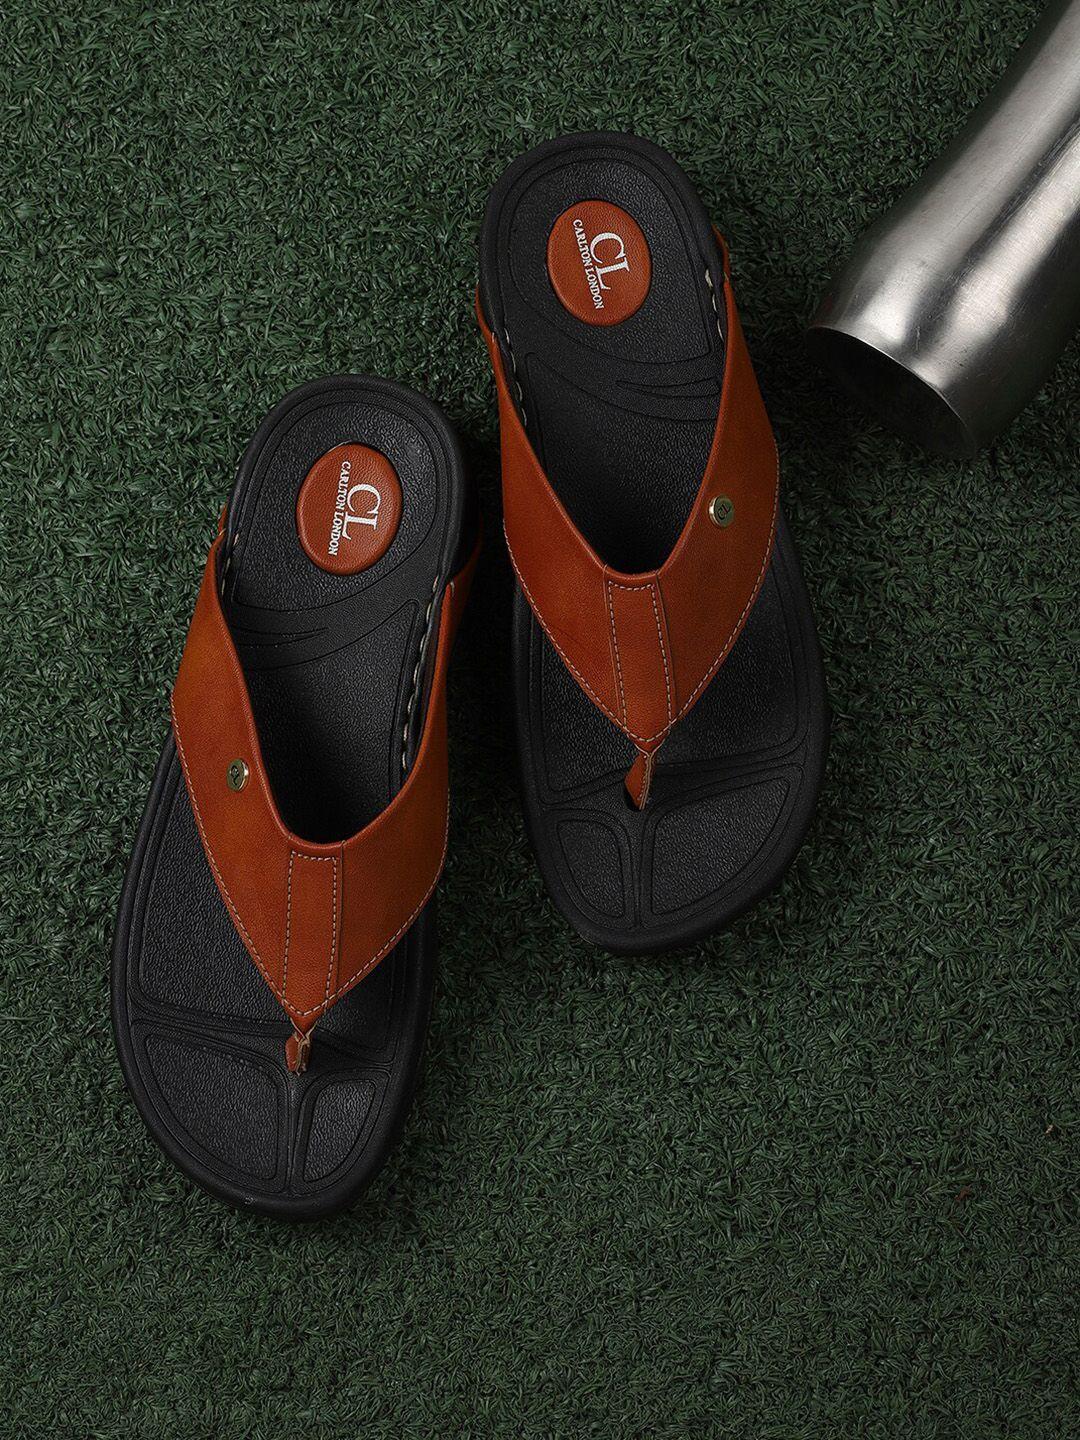 carlton-london-men-tan-&-black-solid-comfort-sandals